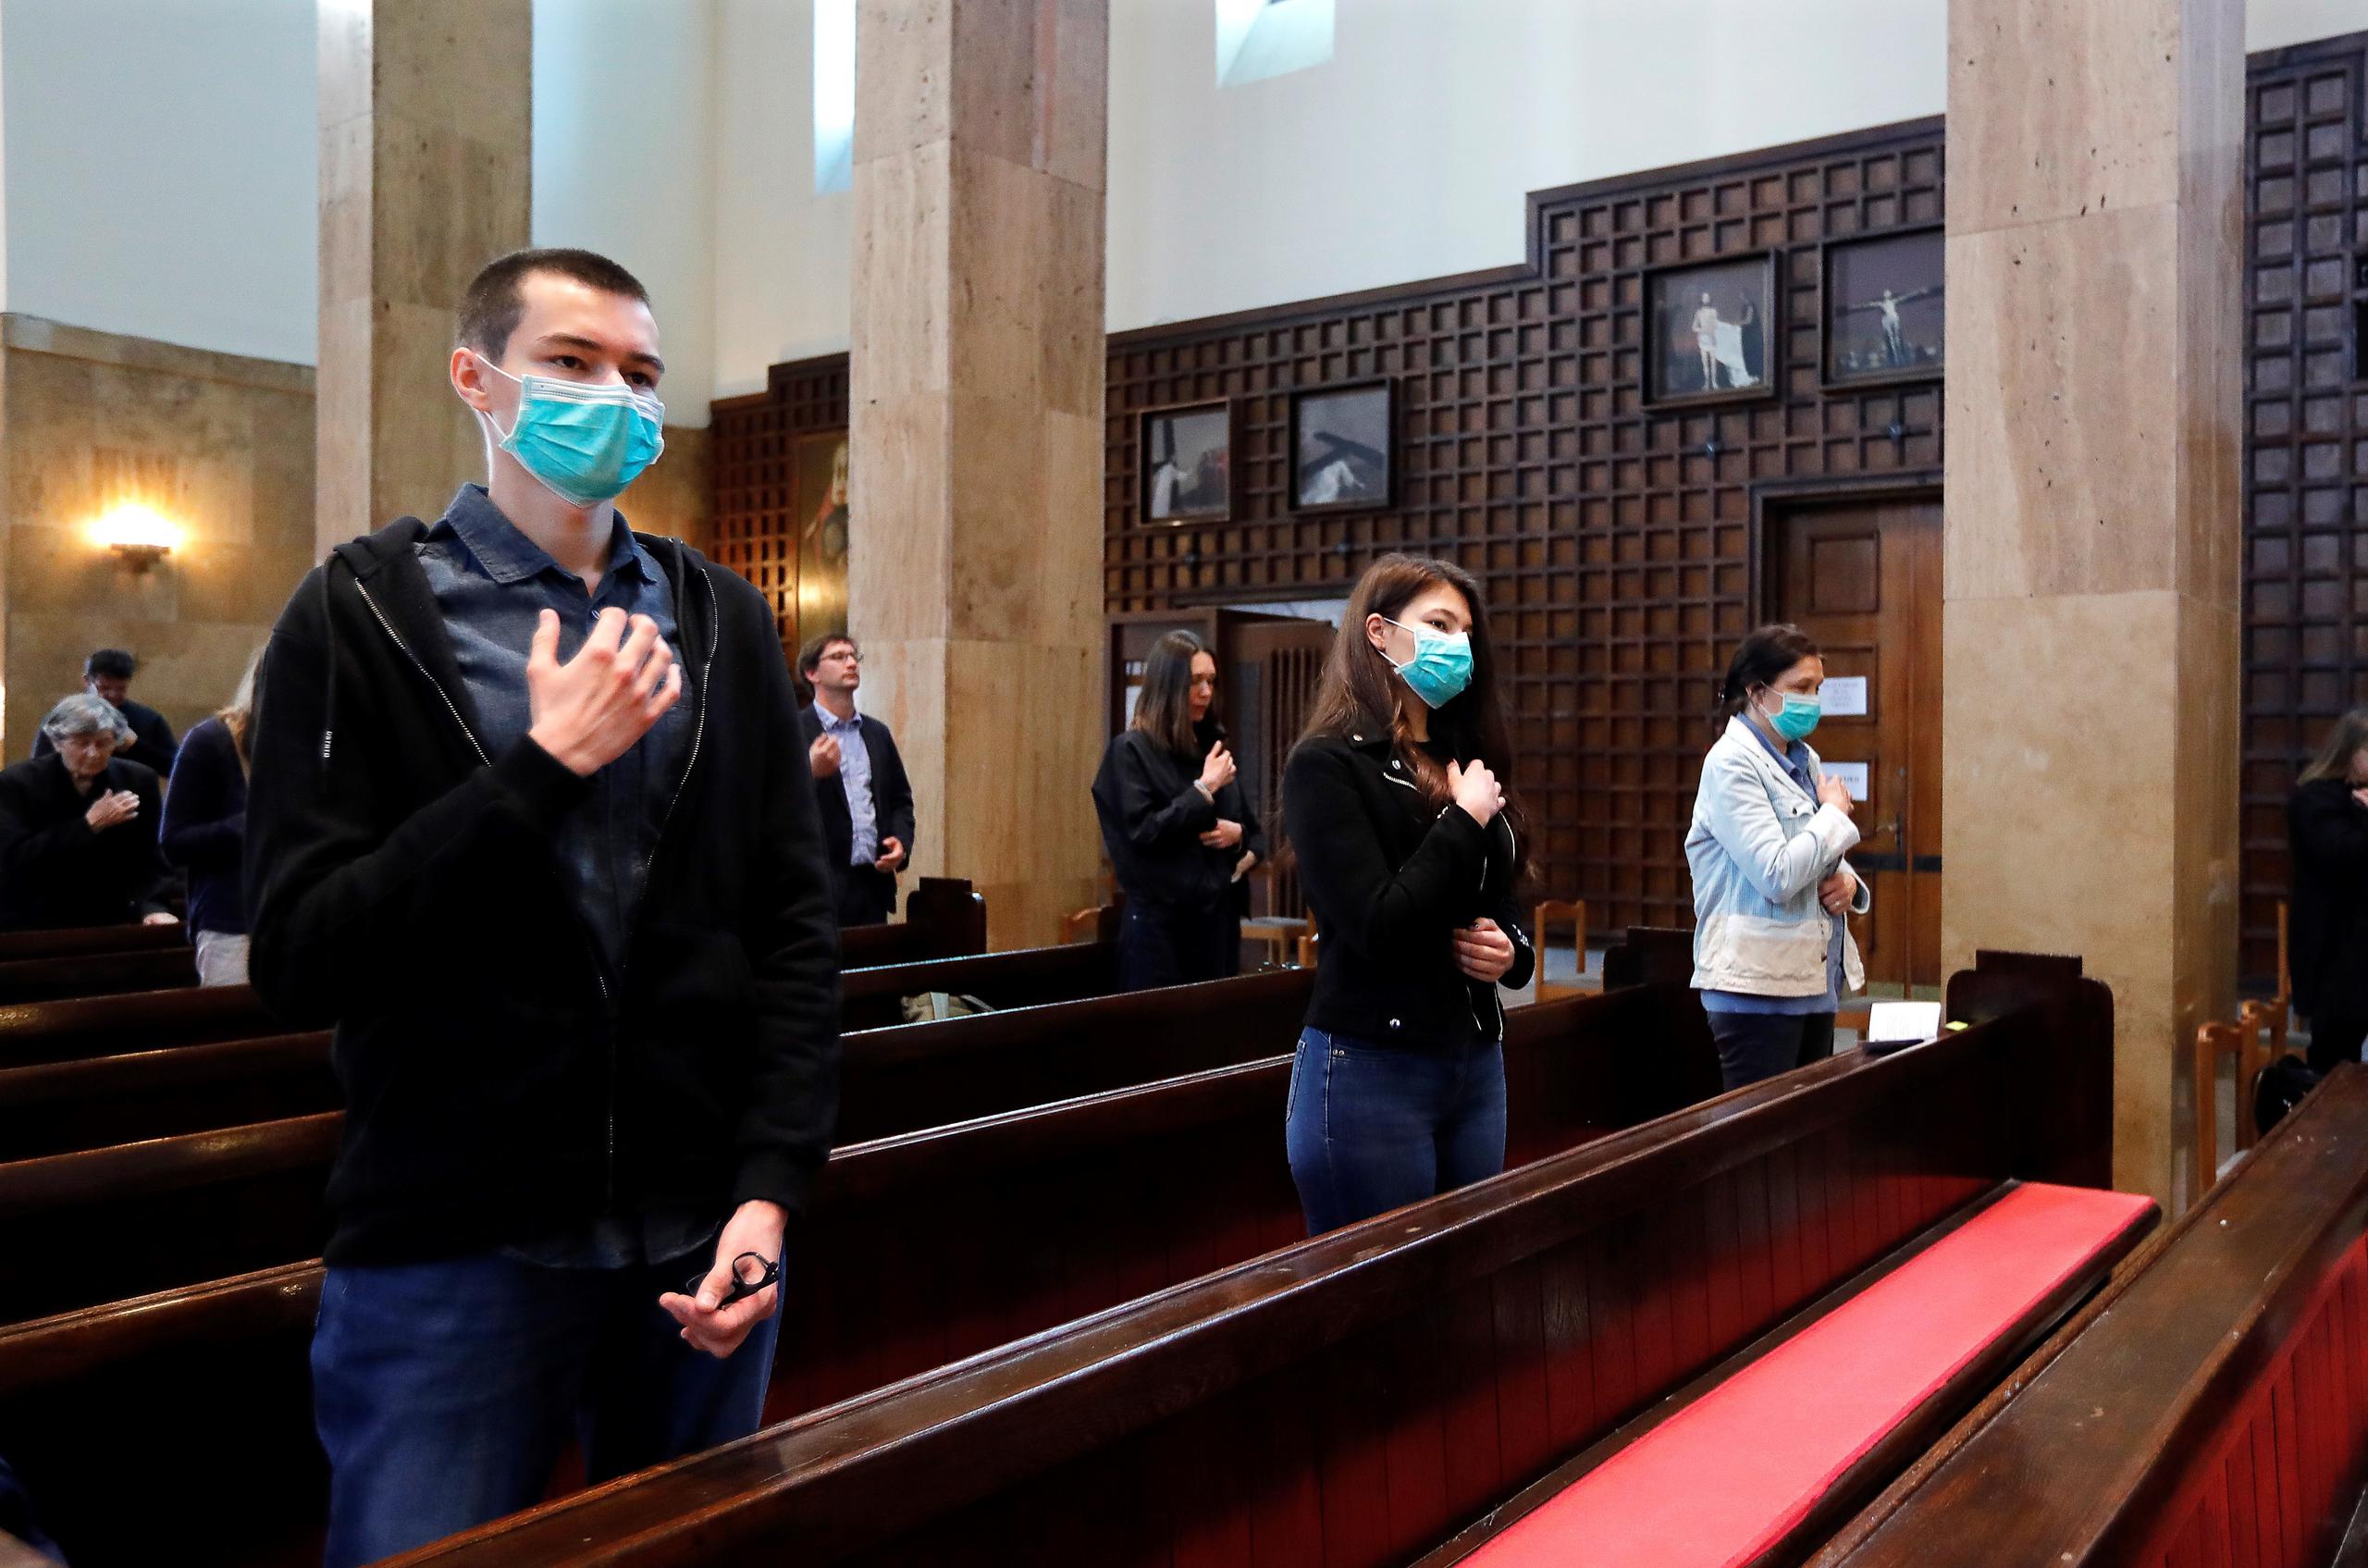 Fieles con mascarillas en una iglesia en Croacia.